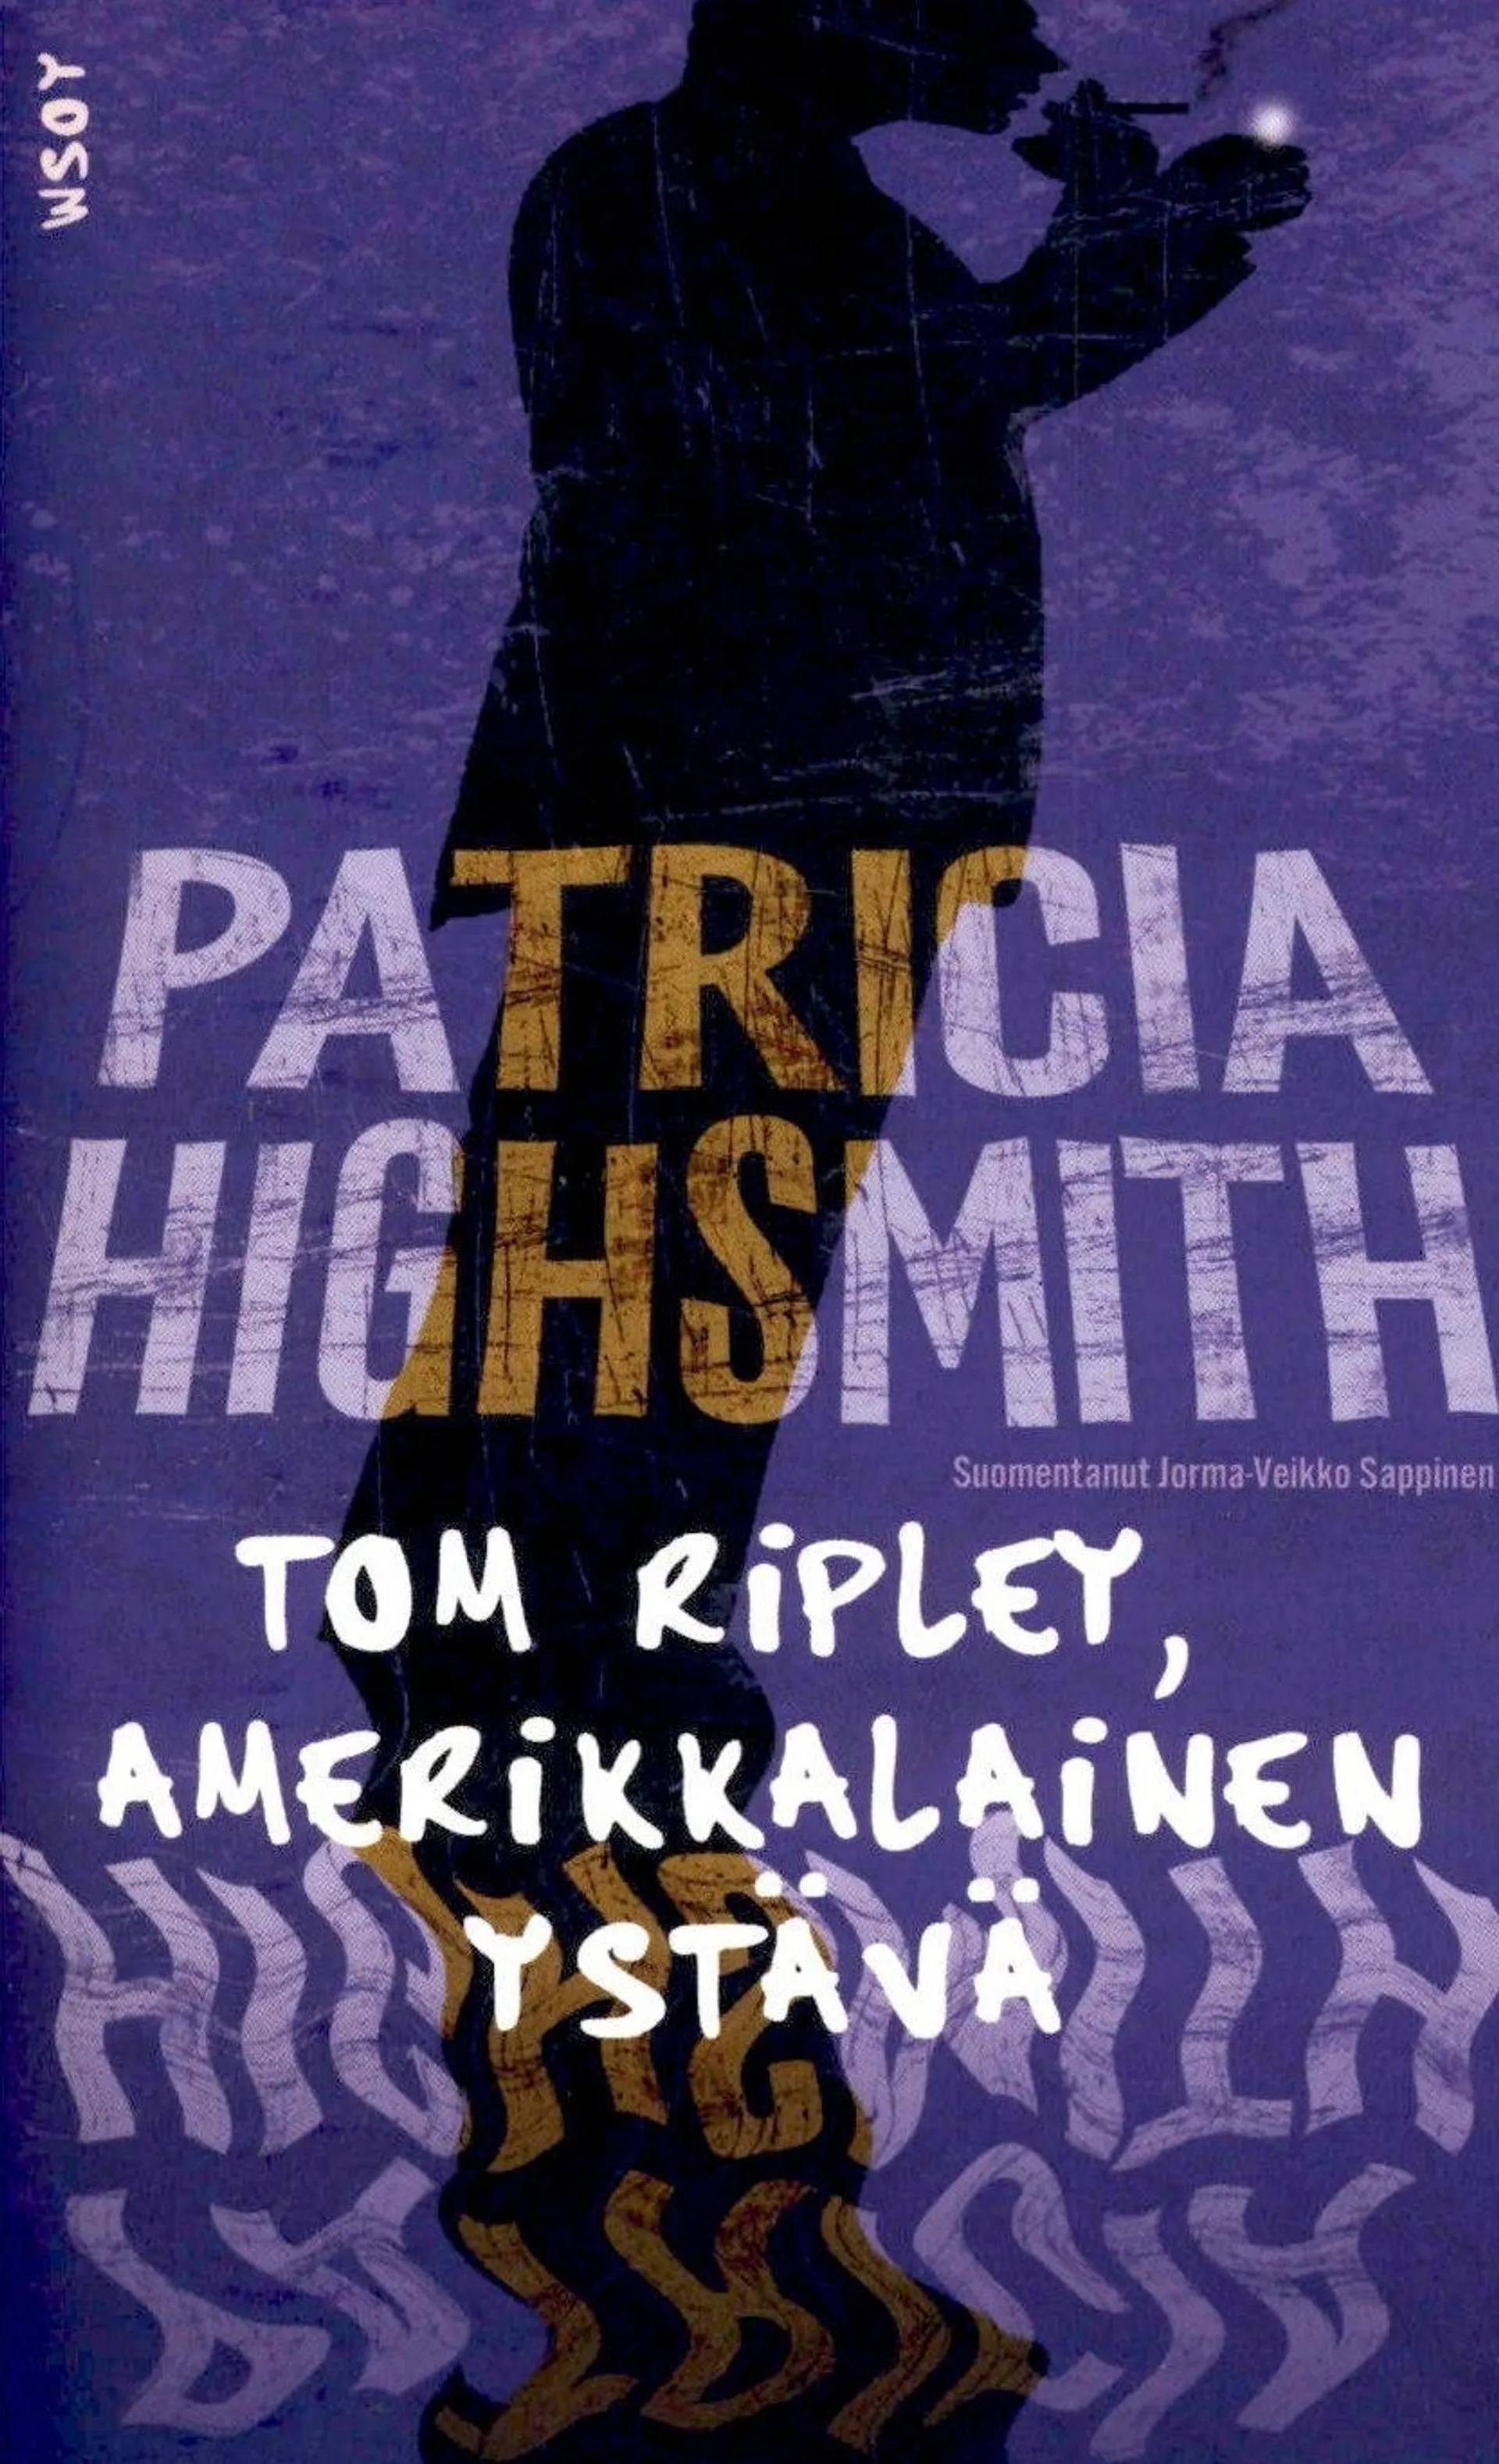 Highsmith, Tom Ripley, amerikkalainen ystävä